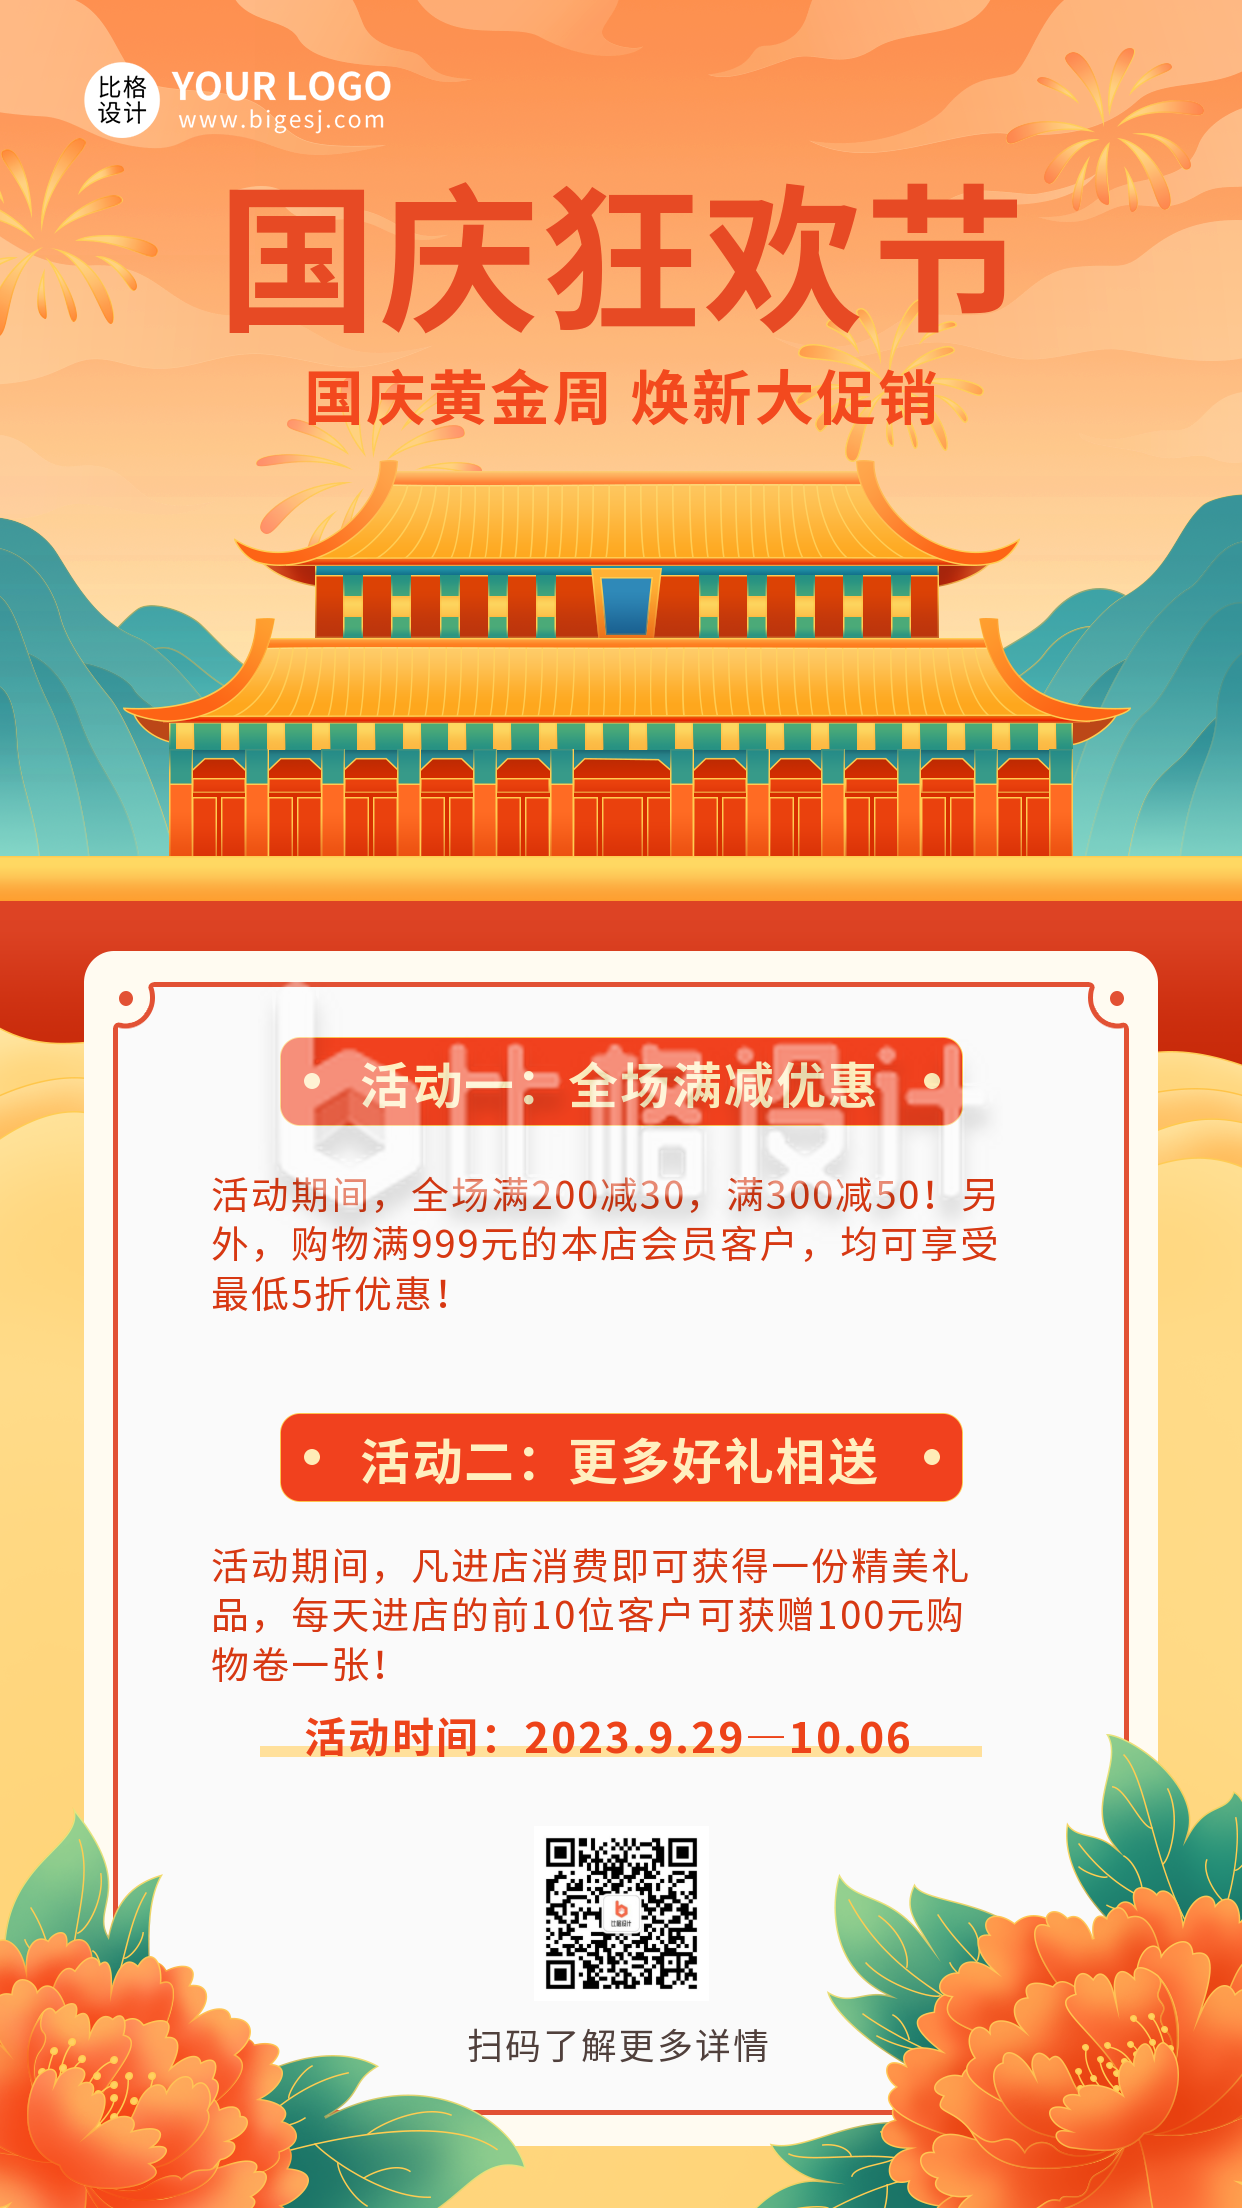 橙色手绘国潮风国庆节黄金周活动宣传手机海报